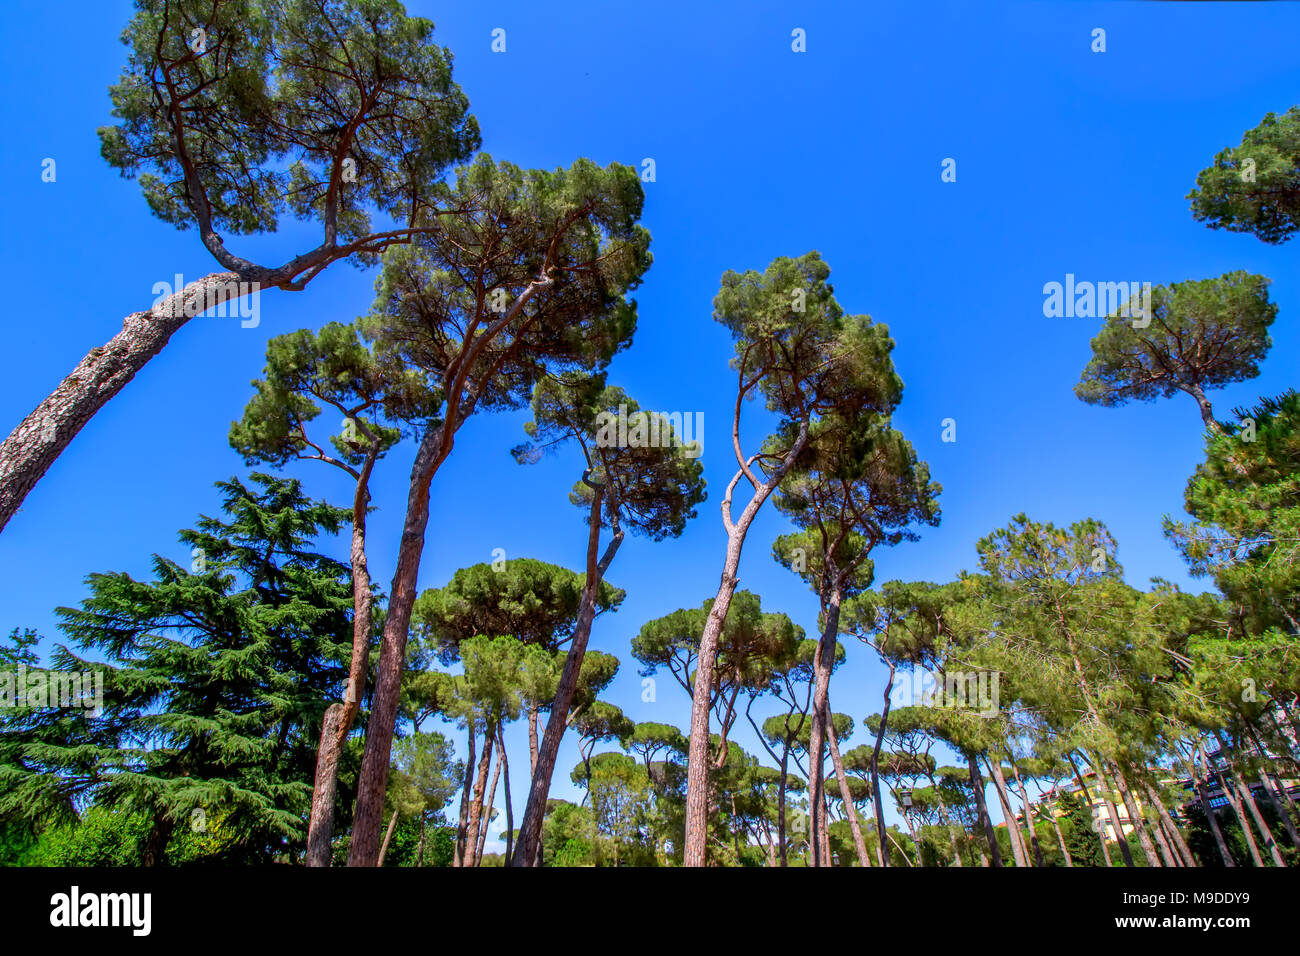 Majestically tall umbrella pine trees, Pinus pinea, in the Villa Borghese landscape gardens near Siena Square in Rome Stock Photo